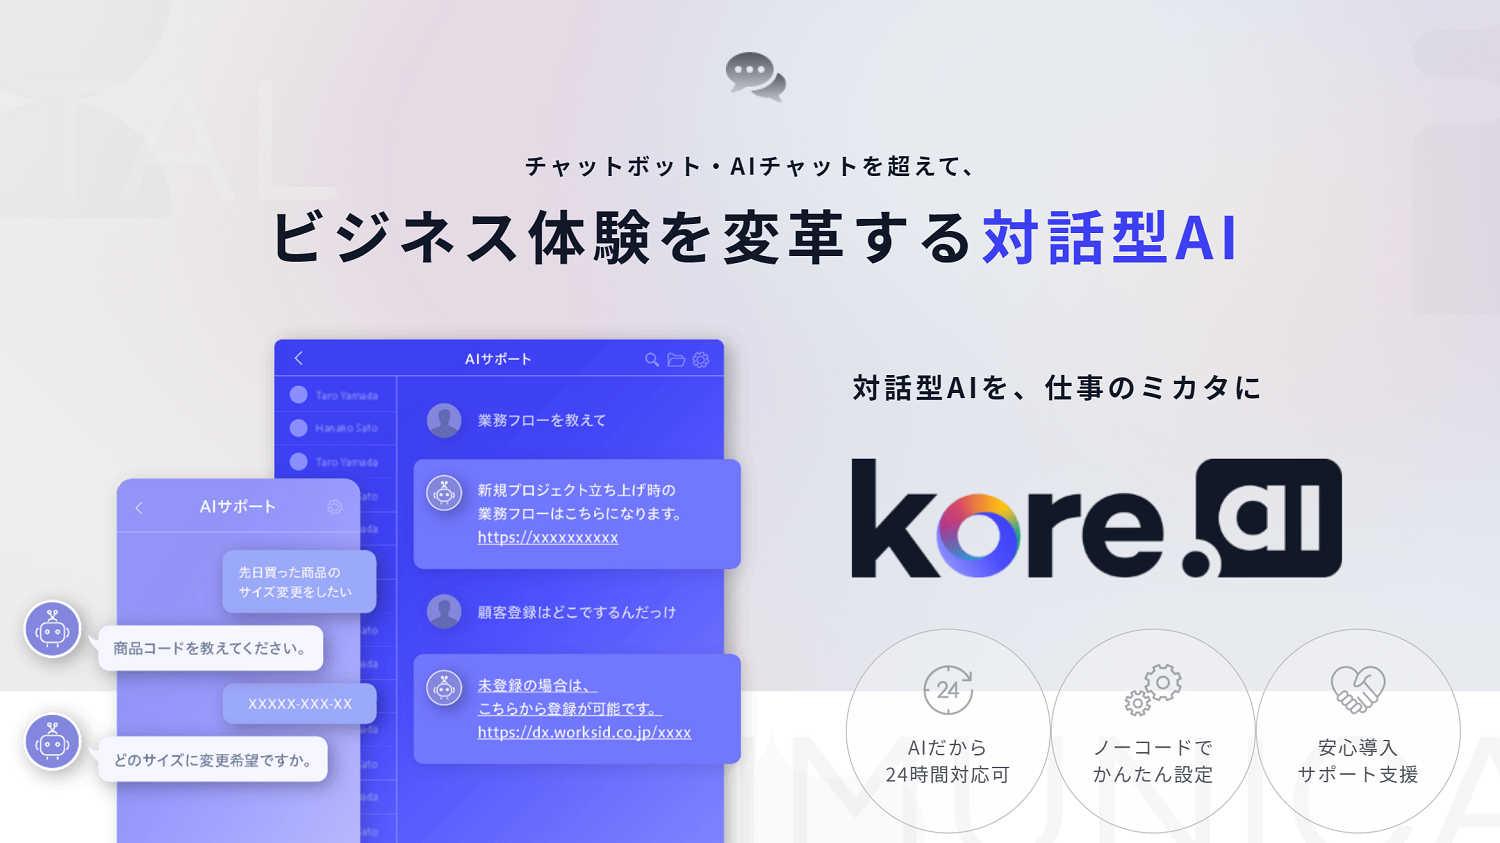 対話型AI「Kore.ai」ノーコードプラットフォームの提供開始
